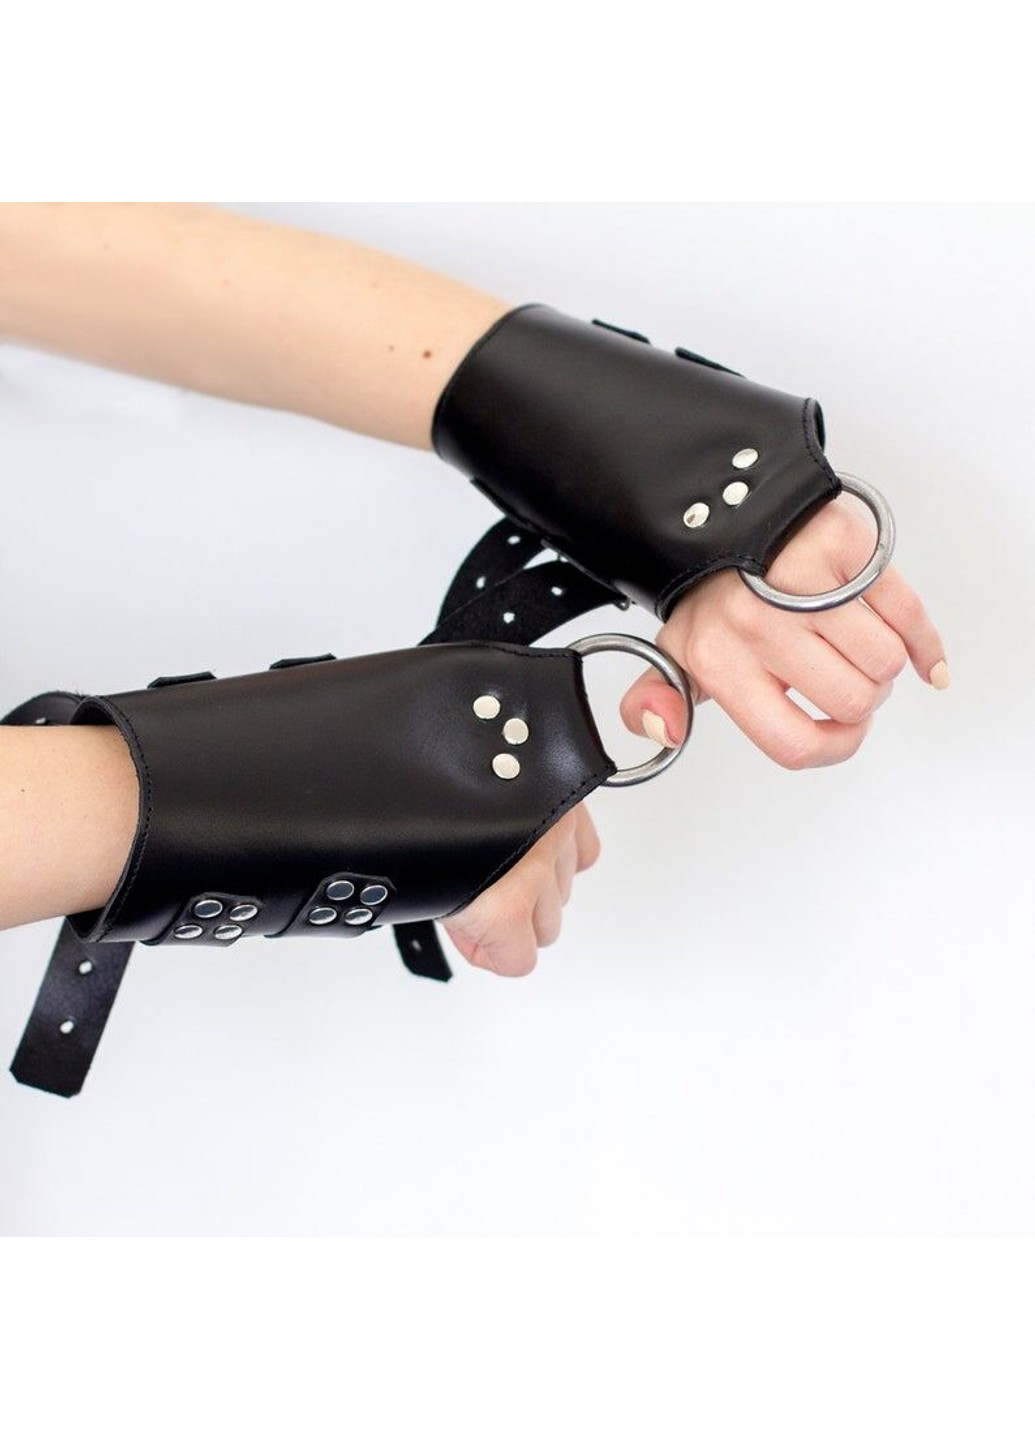 Манжеты для подвеса за руки Kinky Hand Cuffs For Suspension из натуральной кожи, цвет черный Art of Sex (252383300)